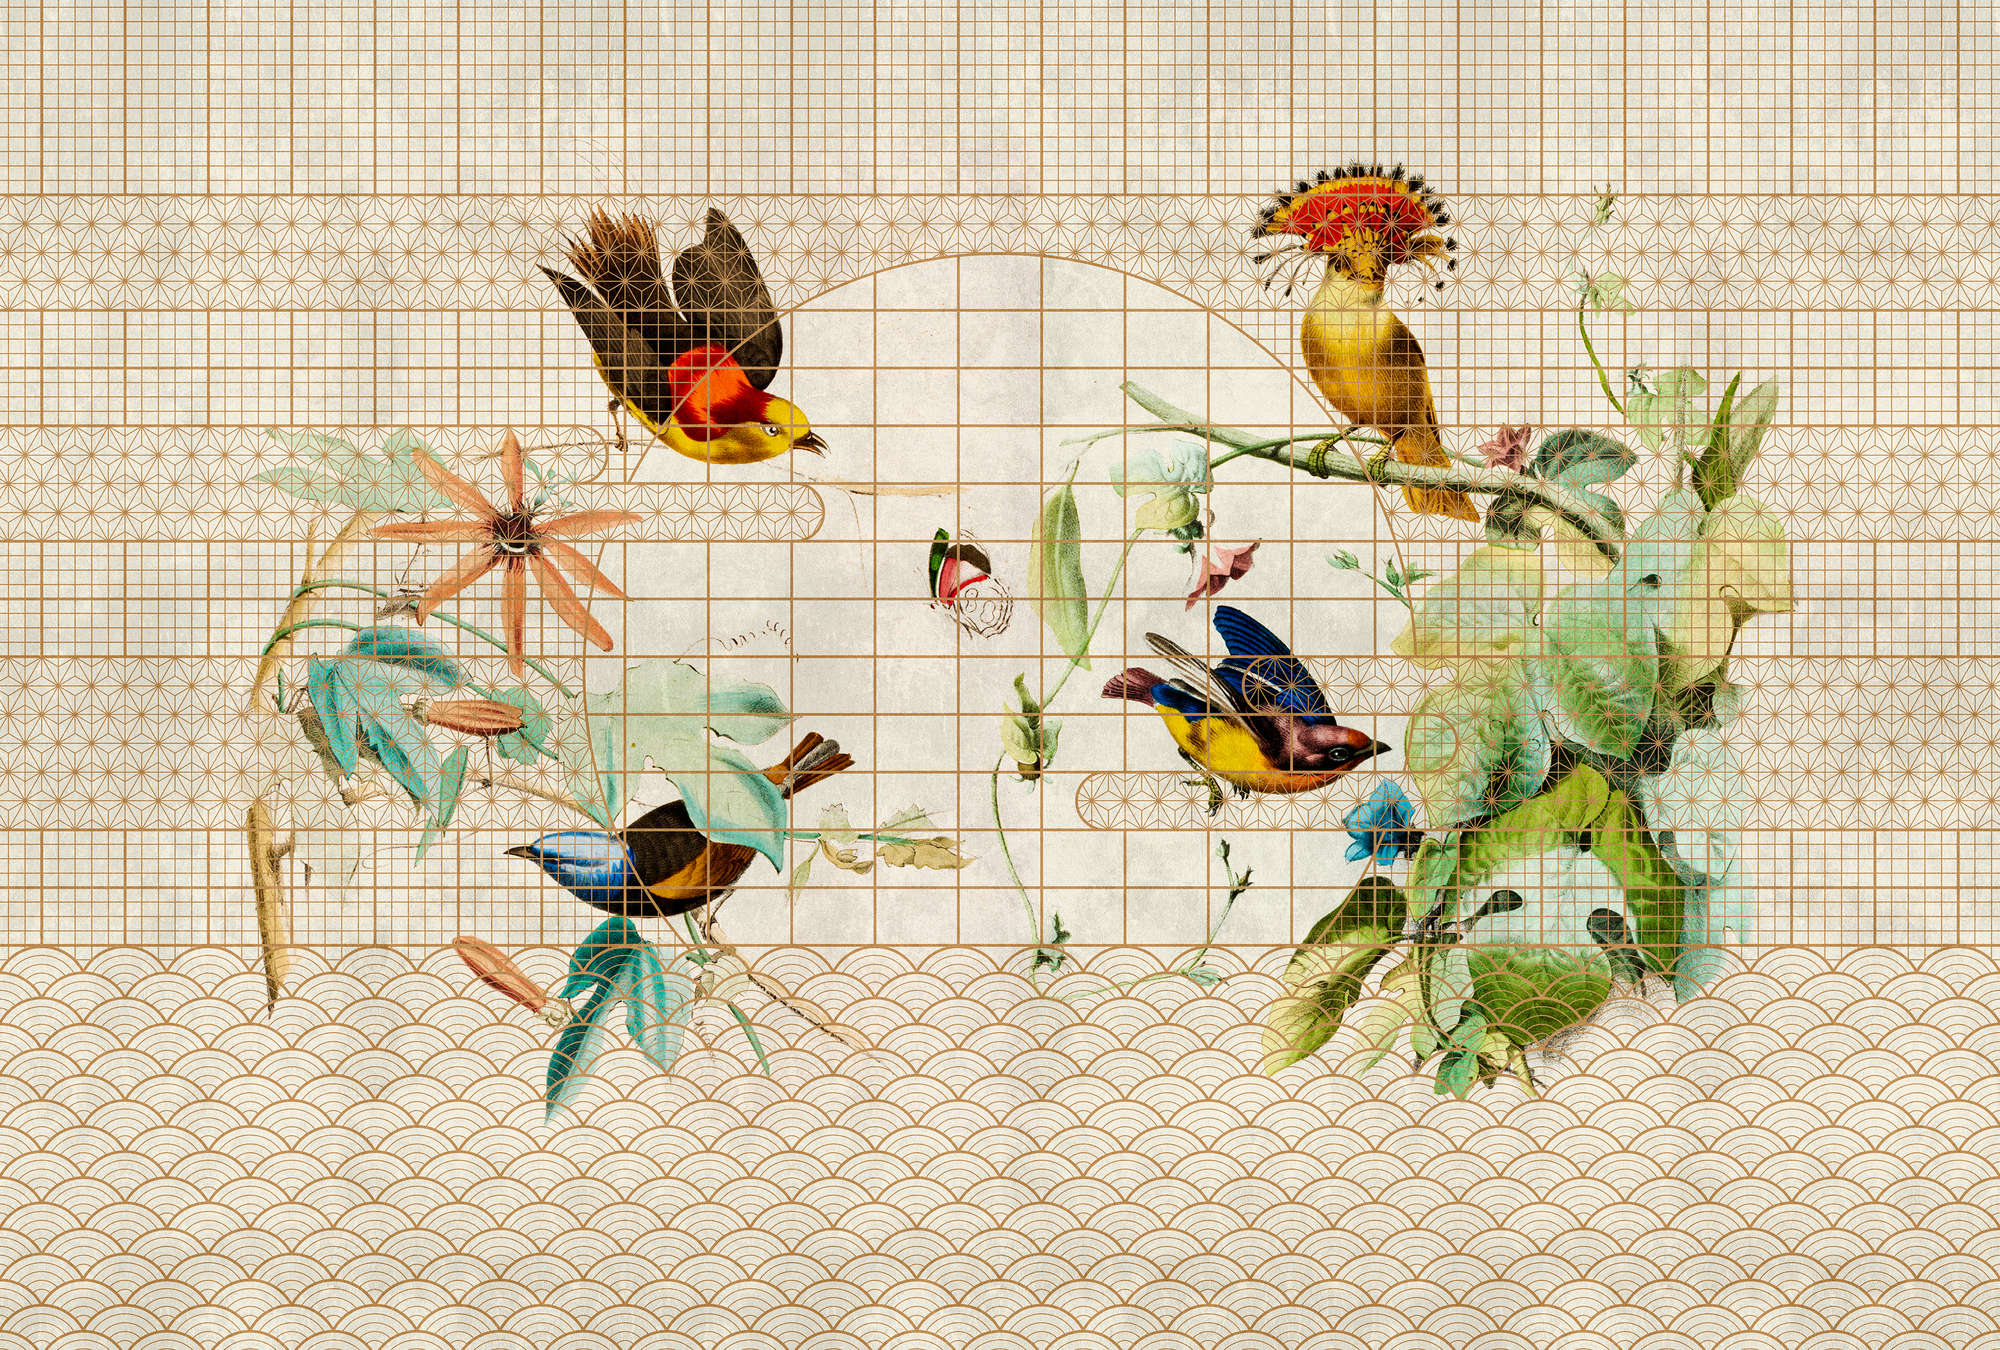             Volière 1 - Muurschildering vogels & vlinders in gouden volière
        